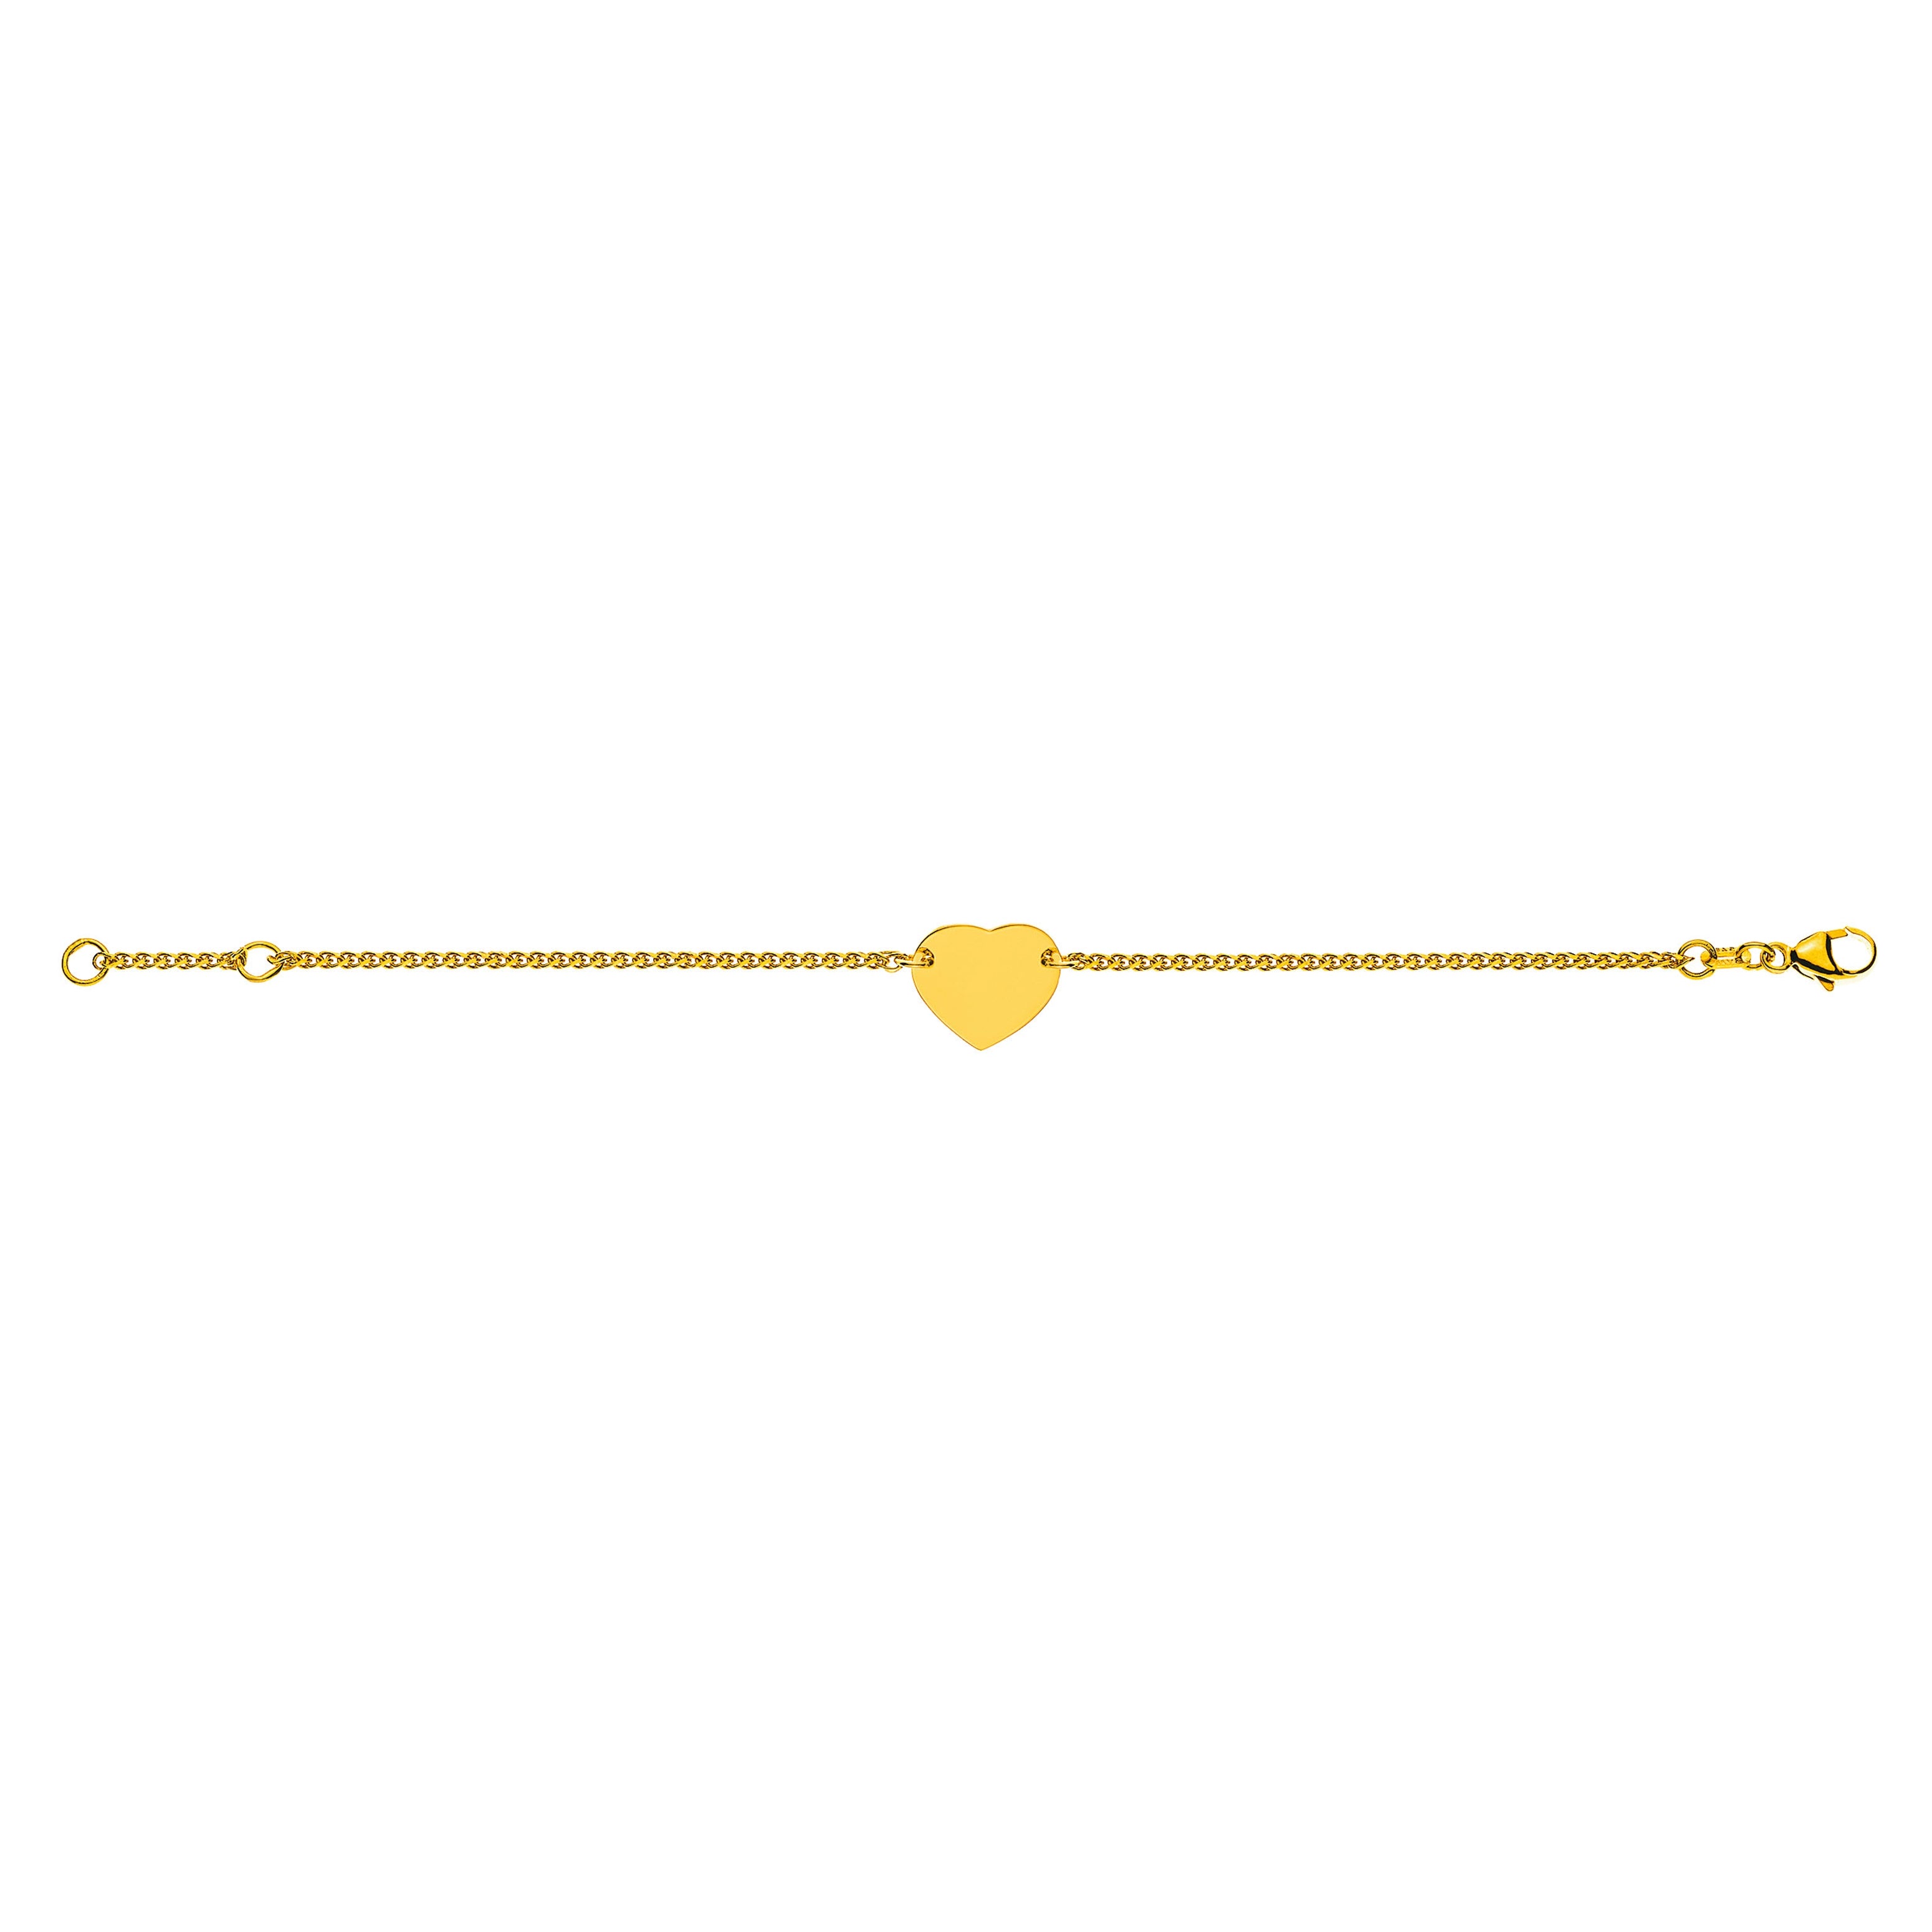 Bébé Bracelet Zopf Diamantiert Gelbgold 750, 14 cm mit Gravurplatte Herzförmig 12 mm, Poliert/Gesandelt